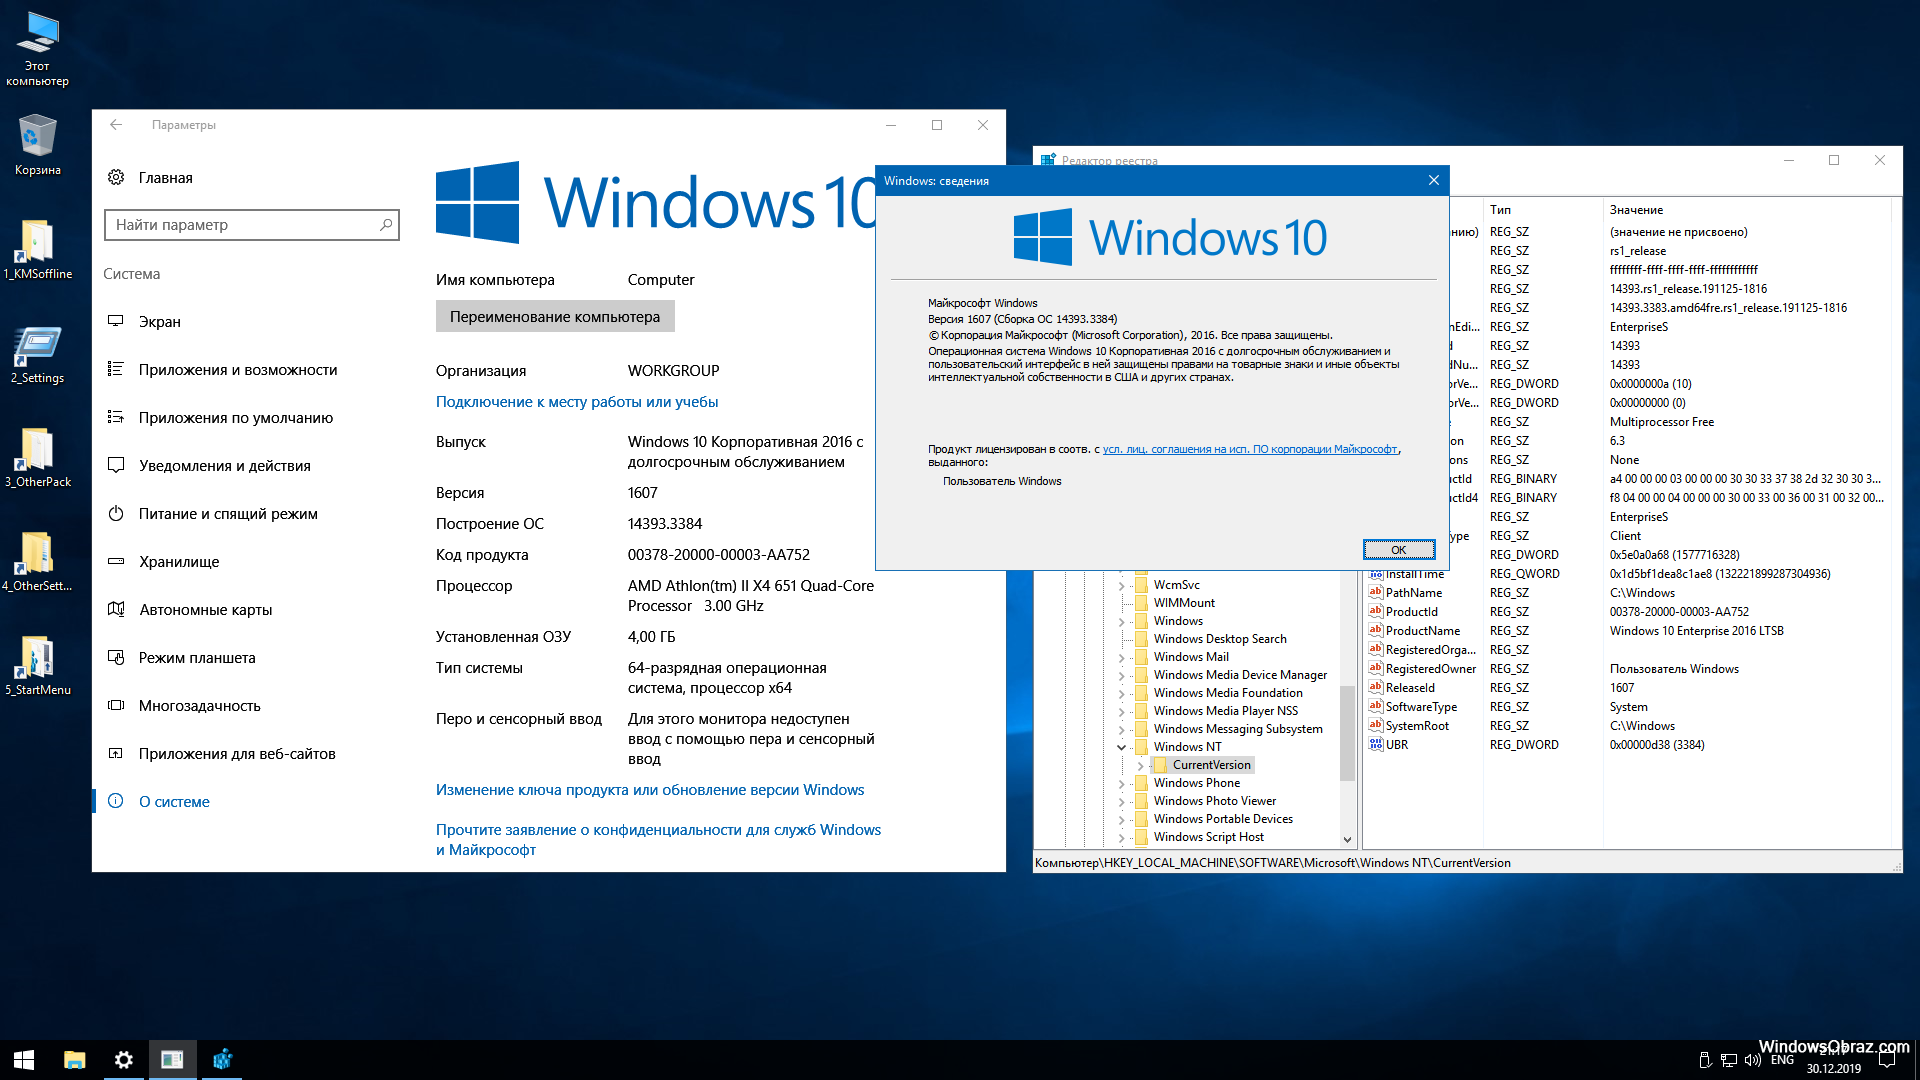 10 x64 x86 версии. Windows 10 LTSB 1607. Windows 10 Enterprise (корпоративная). Windows 10 Enterprise 2016 LTSB. Windows 10 корпоративная Windows 10 корпоративная.